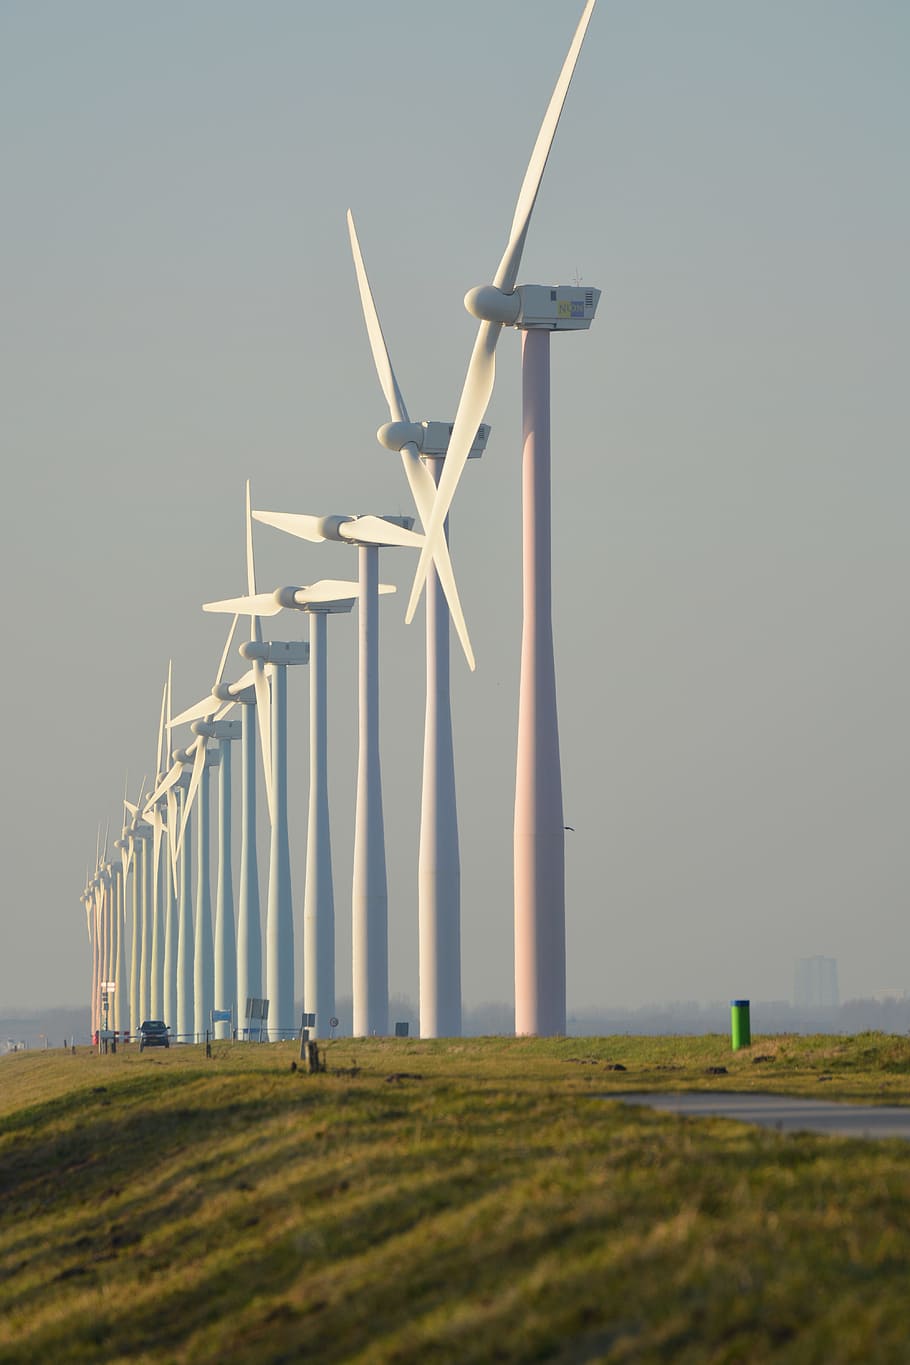 Alam, Kincir Angin, Belanda, energi angin, pandangan, sumbu, turbin, Turbin angin, lingkungan, bahan bakar dan Pembangkit Listrik